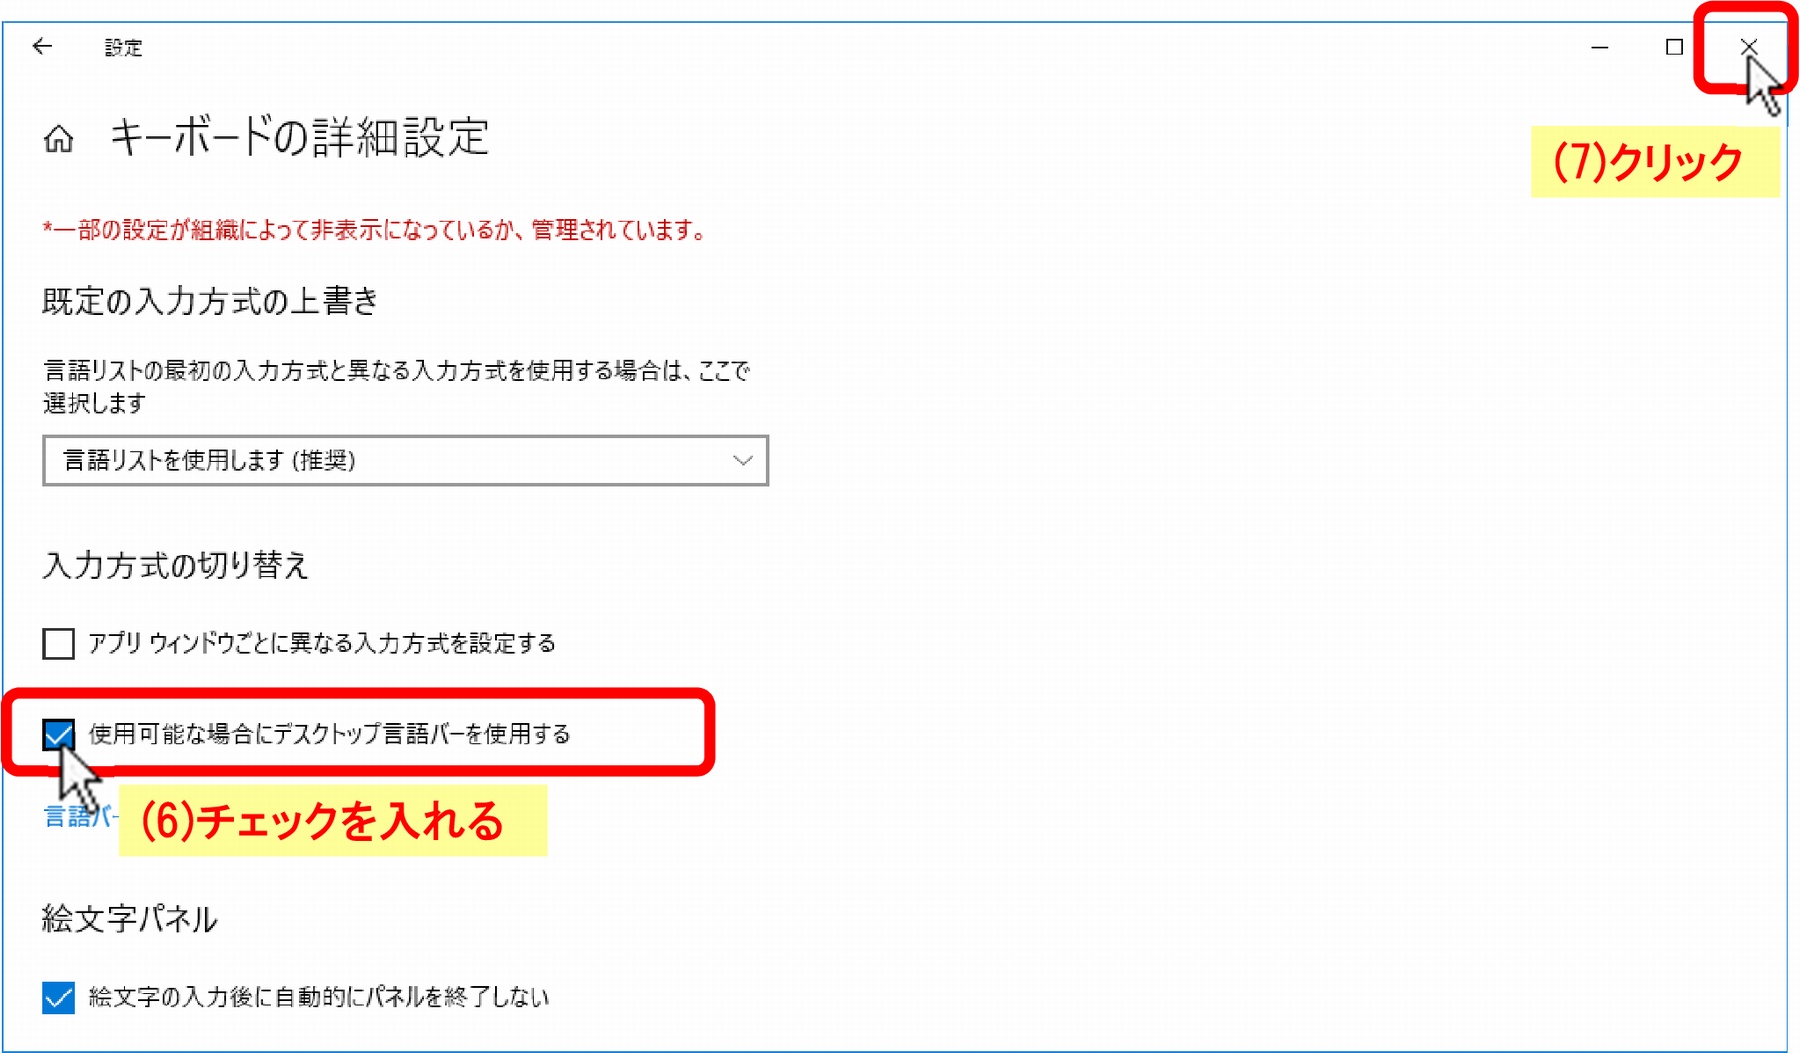 (6)「□使用可能な場合にデスクトップ言語バーを使用する」にチェックを入れ、(7)［×］をクリック